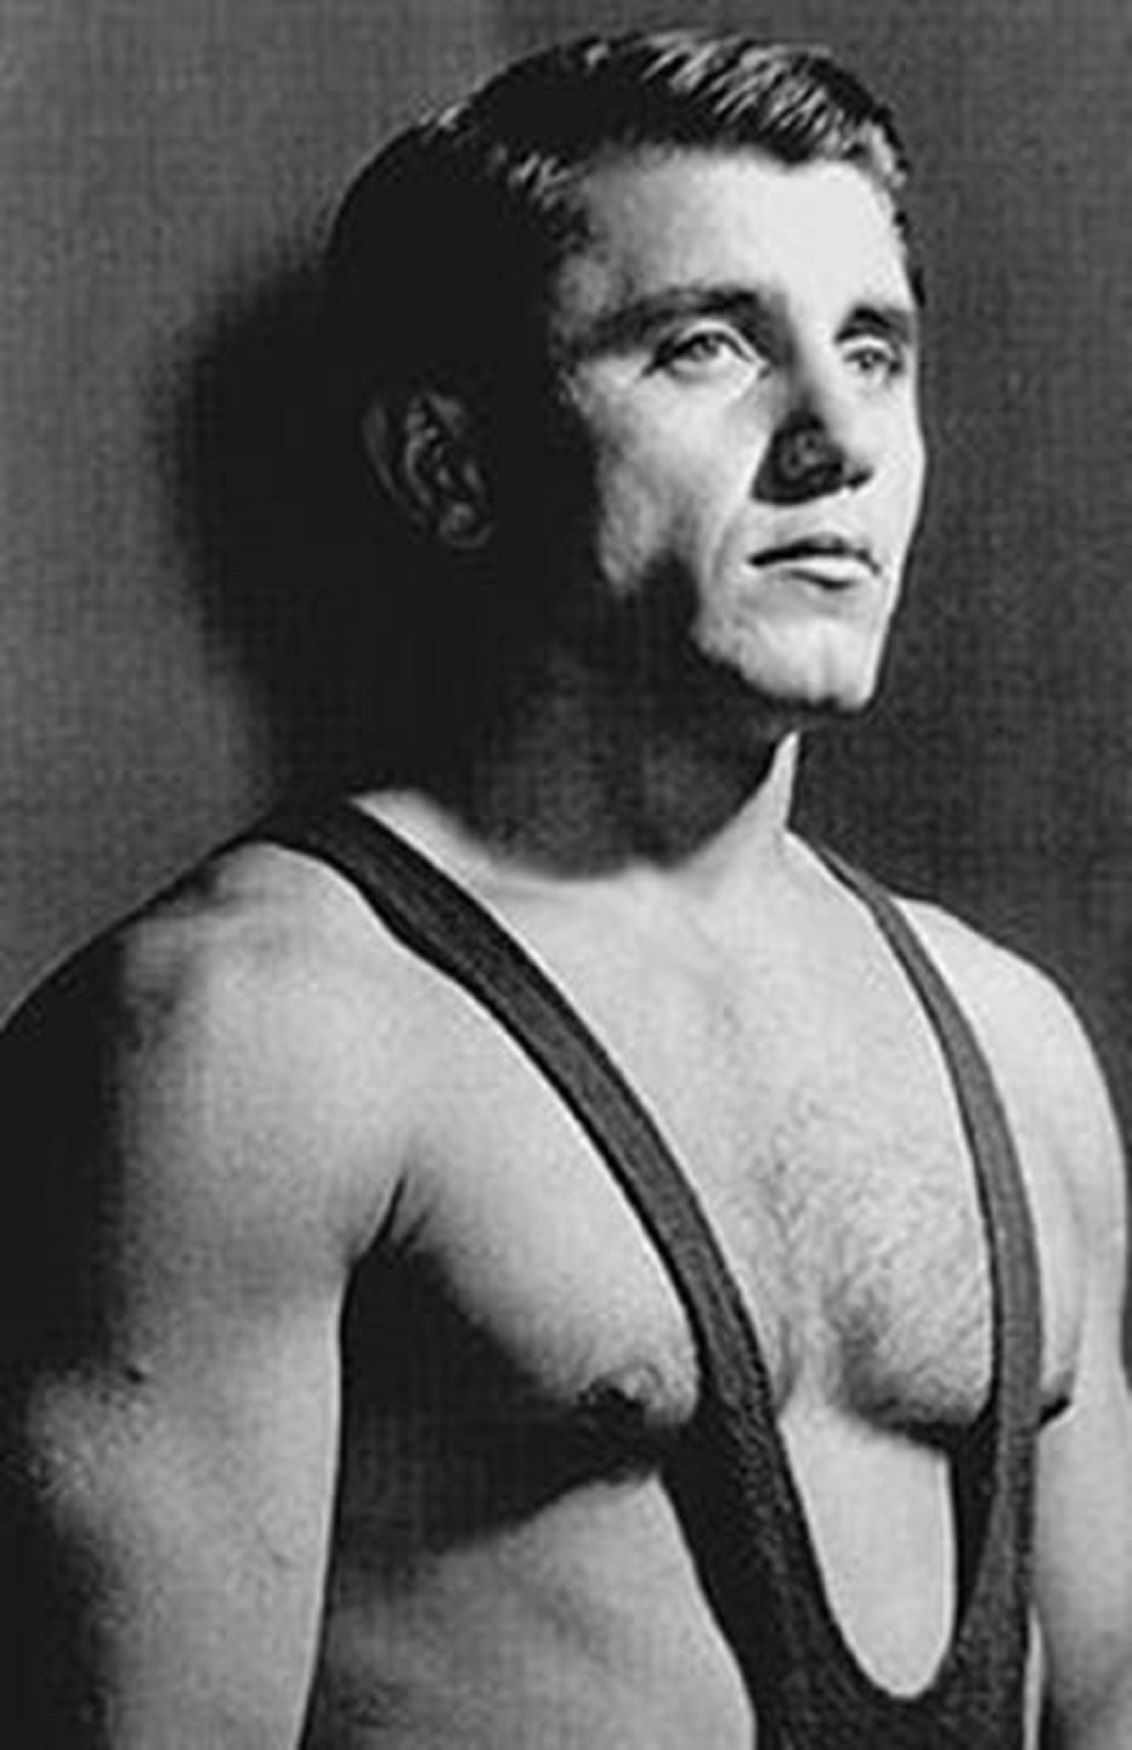 Димитър Добрев (1931-2019) Той е вторият ни олимпийски шампион. Печели титлата си 4 години след Станчев - на игрите в Рим през 1960. Има и спребро от Мелбърн 1956. Той се смята за откривател на легенди като Боян Радев и Петър Киров.